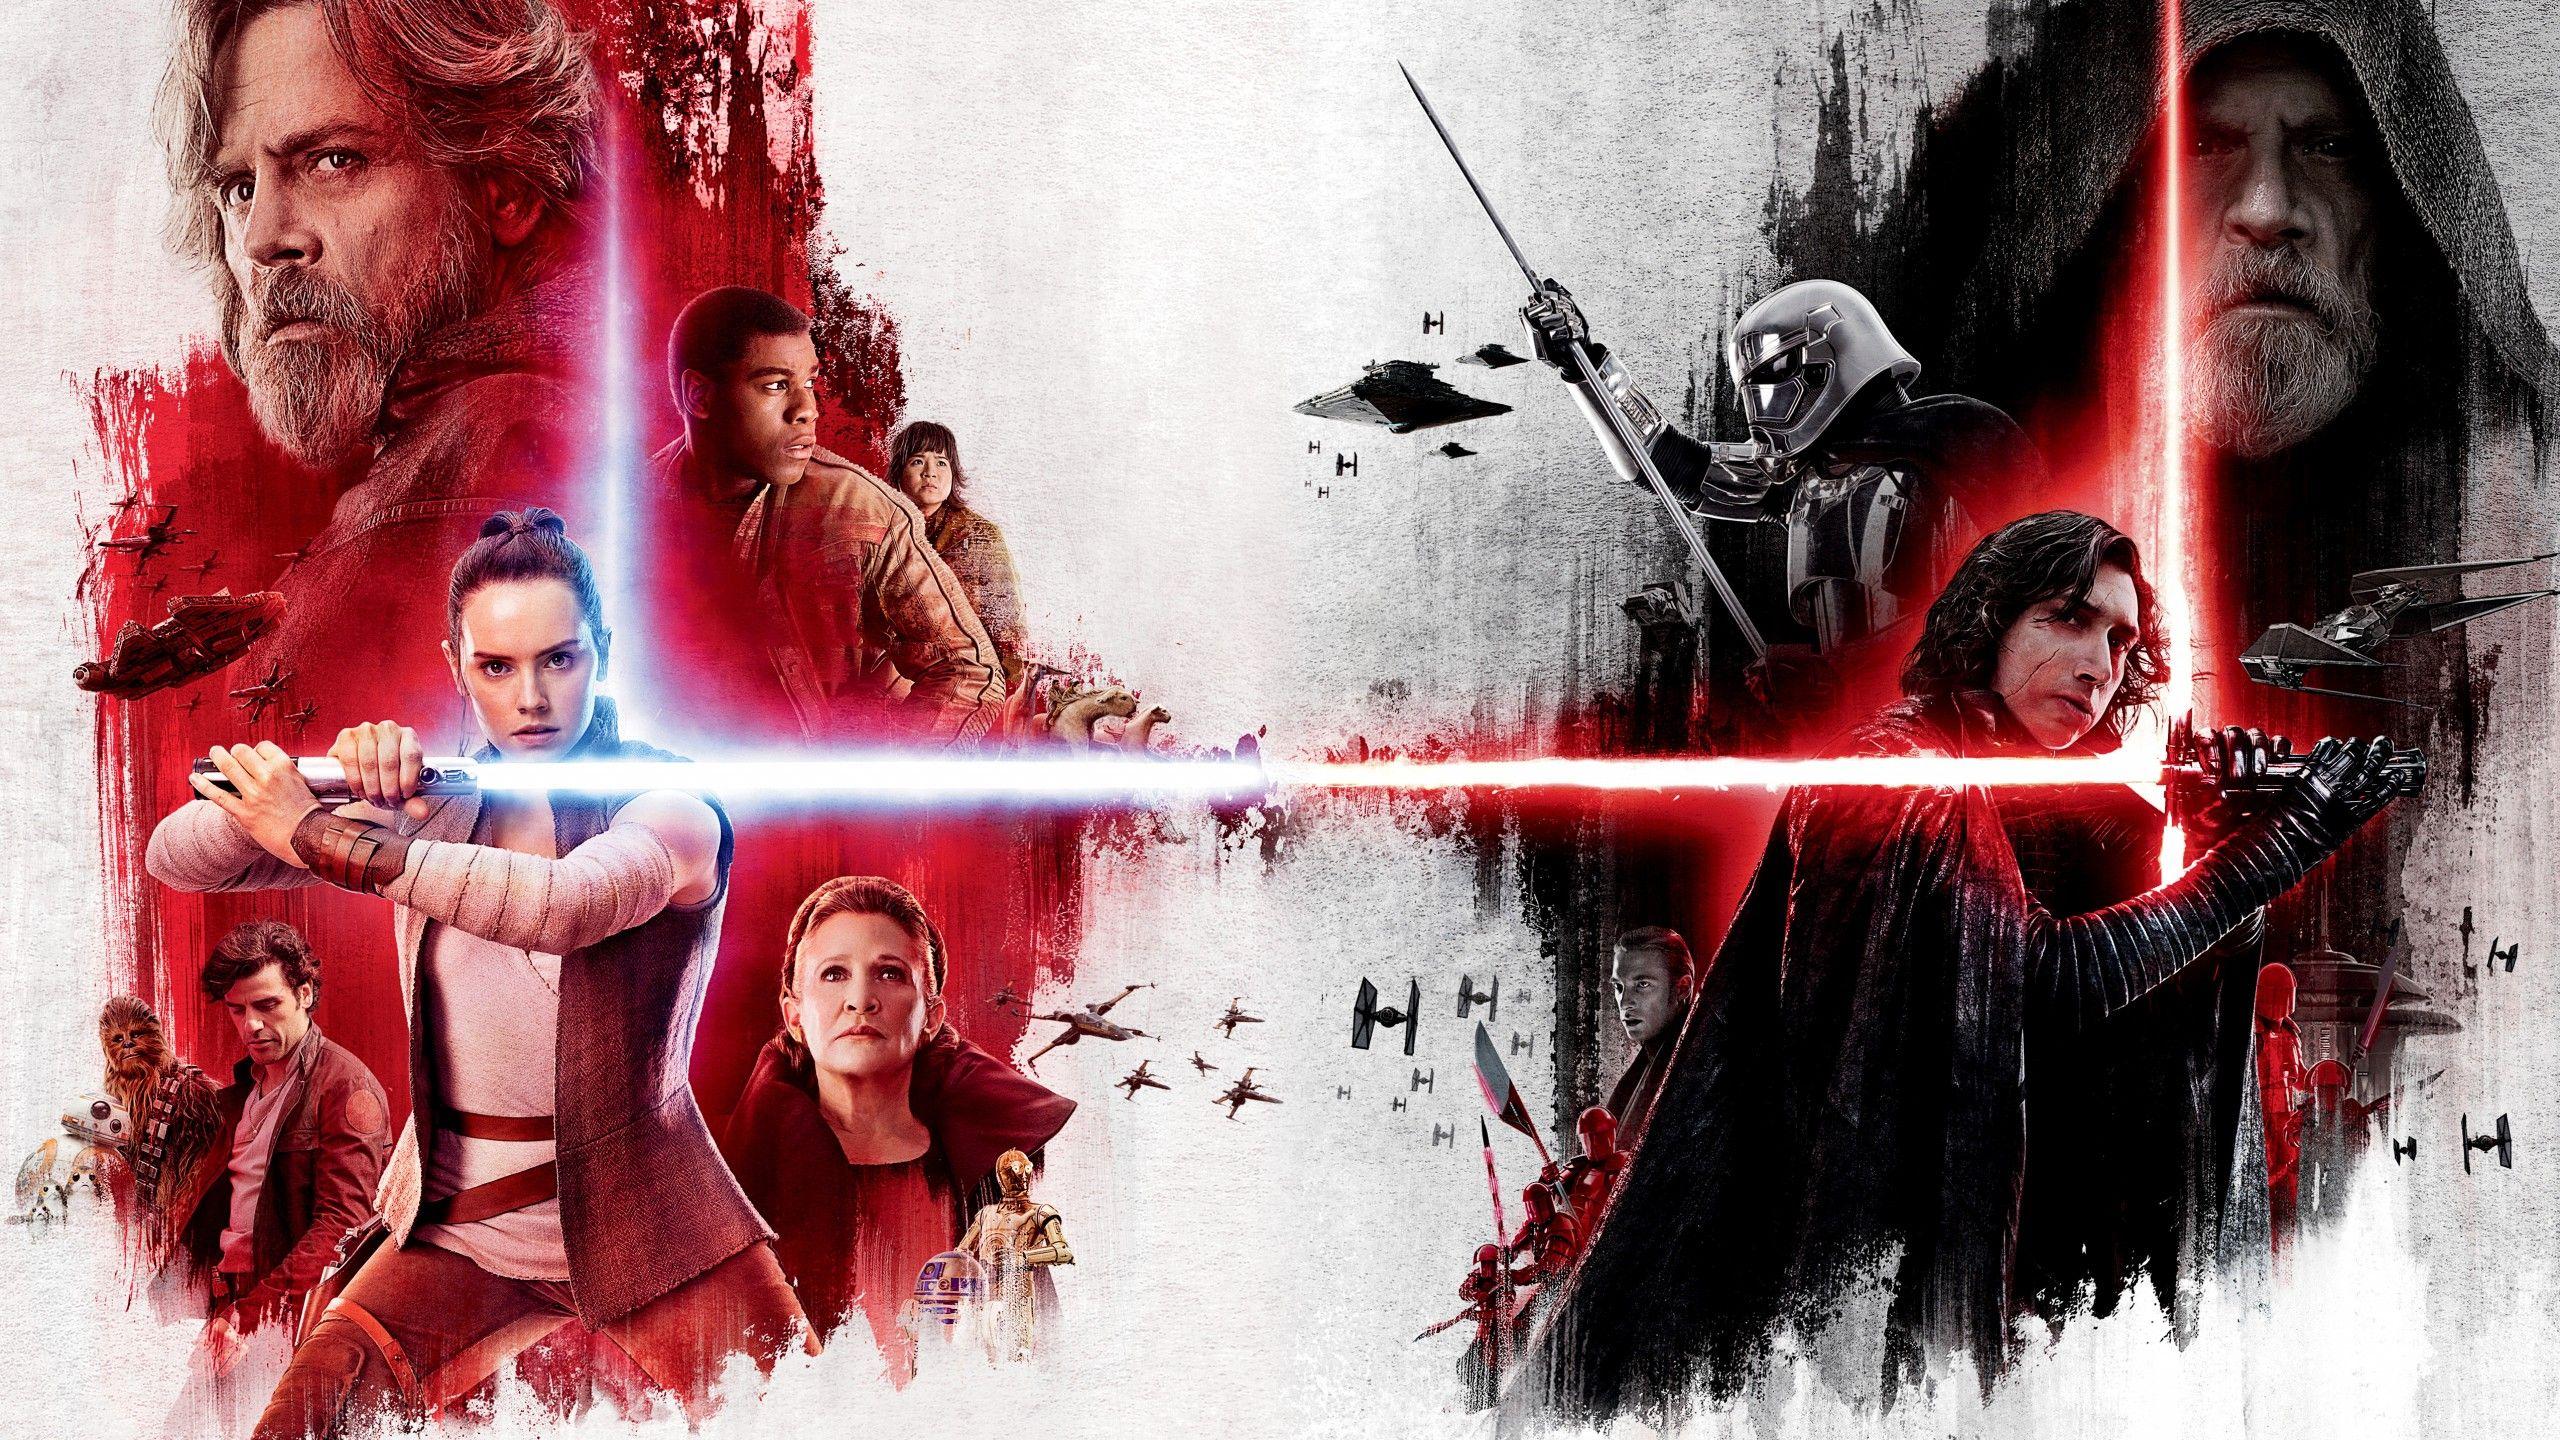 Wallpaper Star Wars: The Last Jedi, Rey, Kylo Ren, Key art